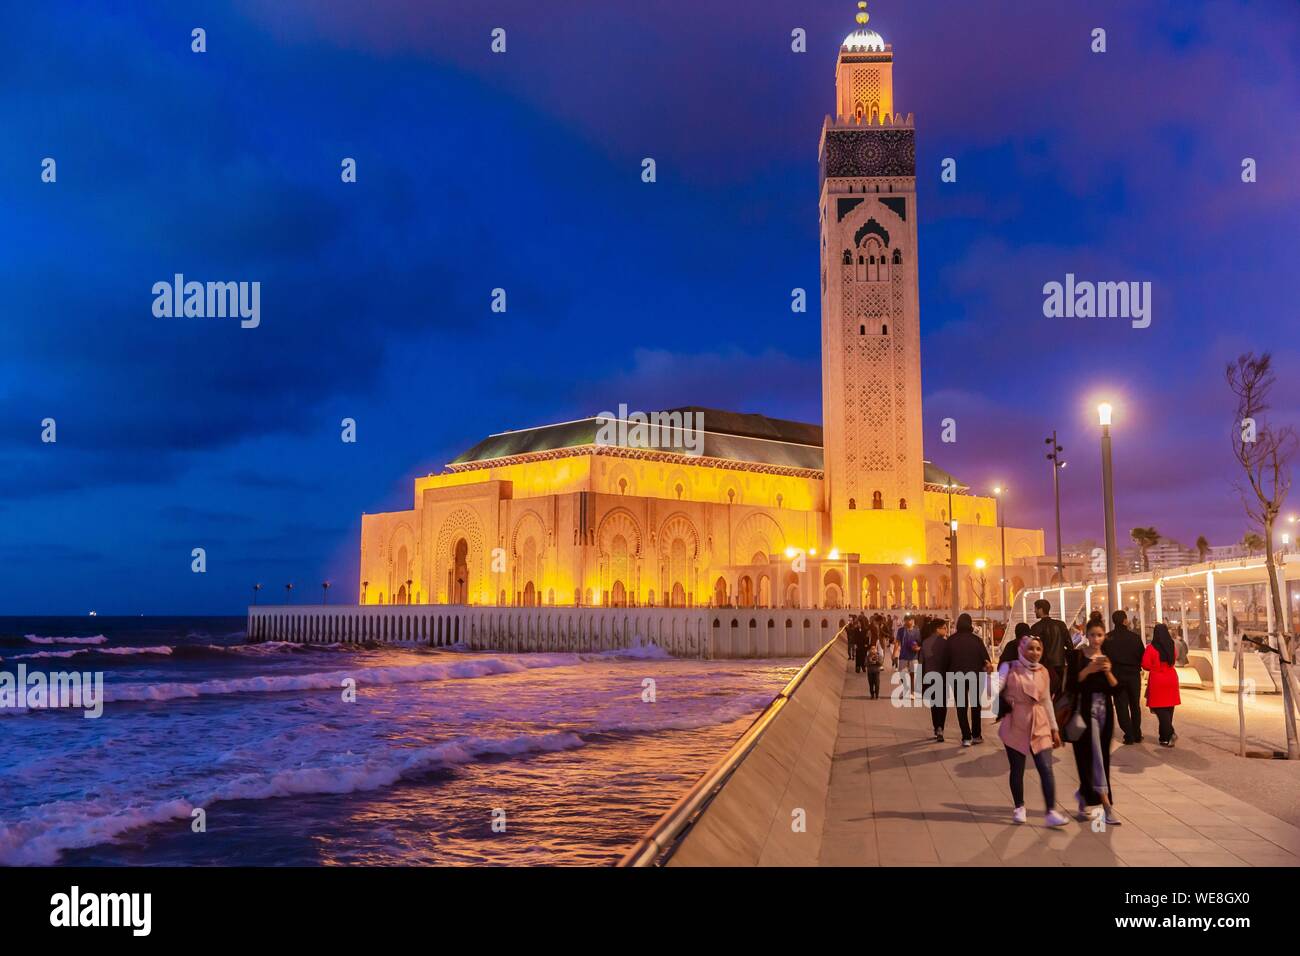 Il Marocco, Casablanca, piazzale della moschea di Hassan II Foto Stock